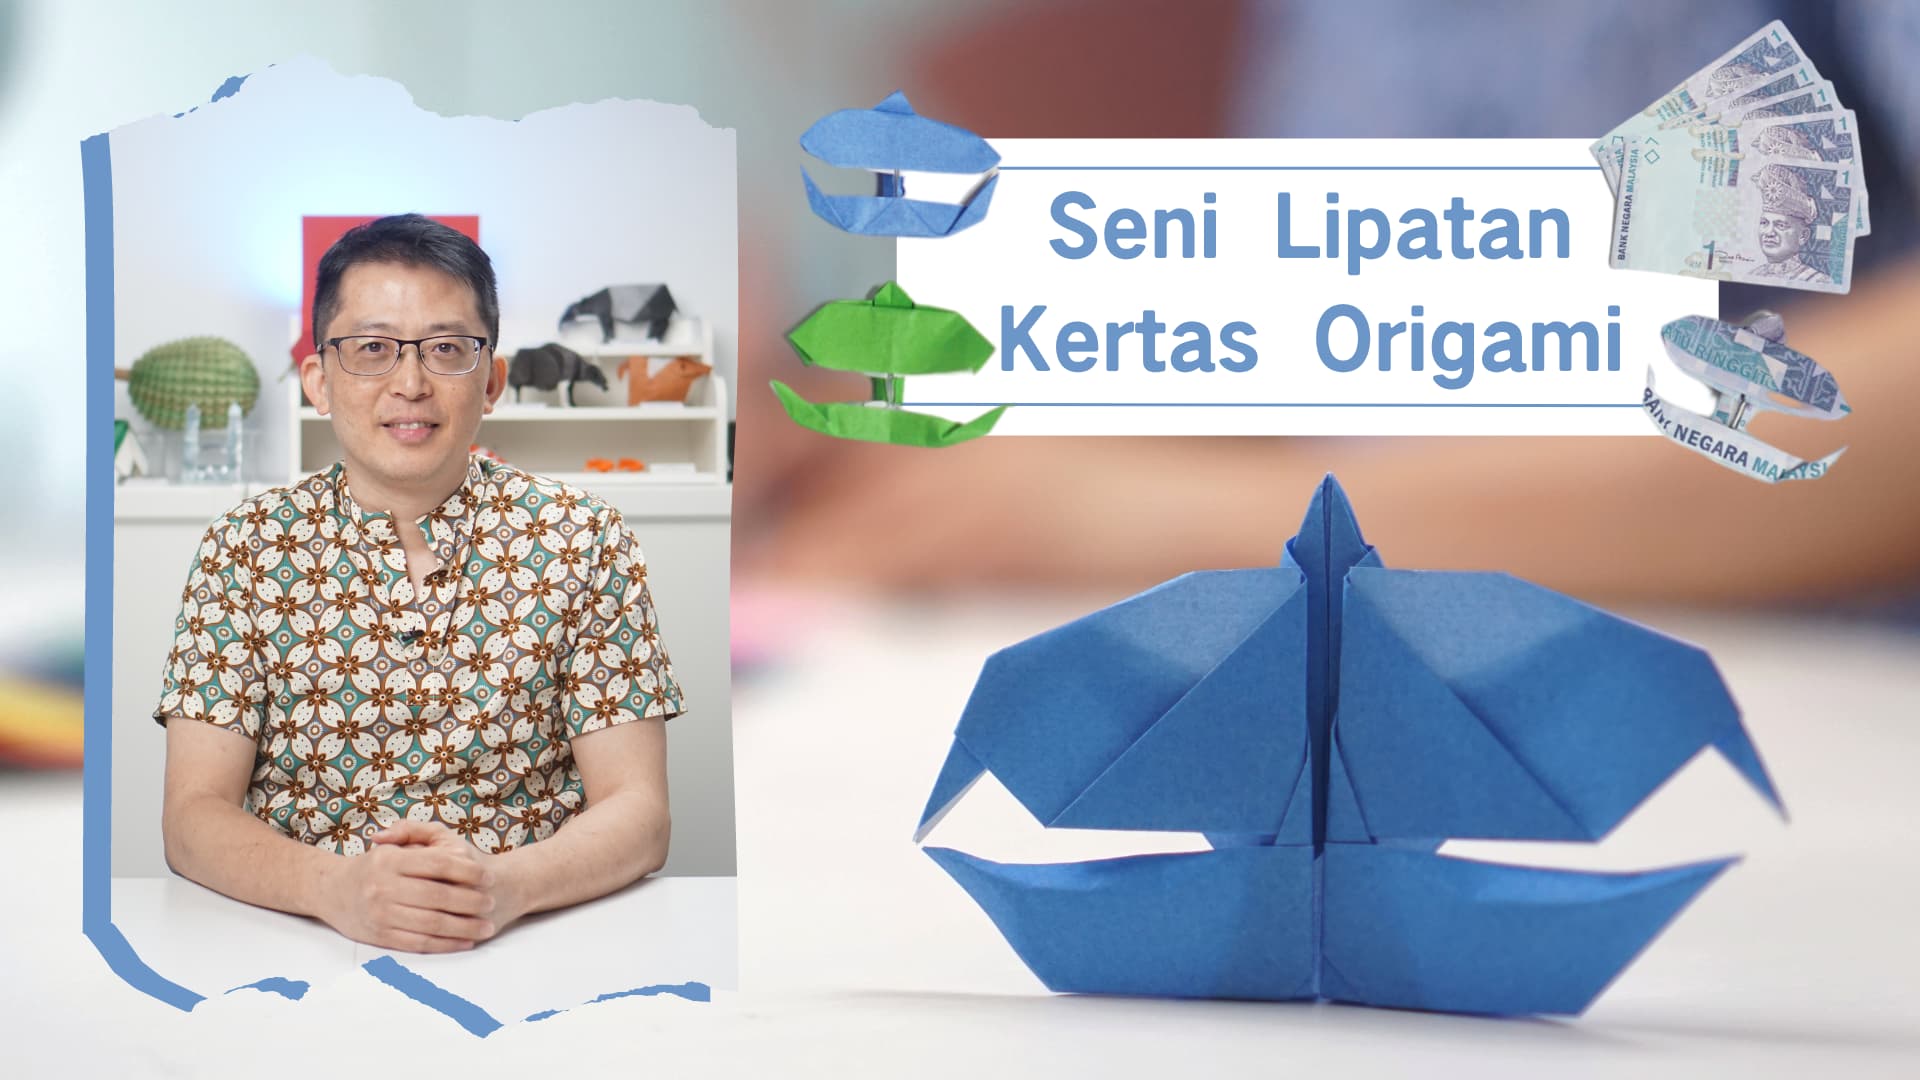 Seni Lipatan Kertas Origami